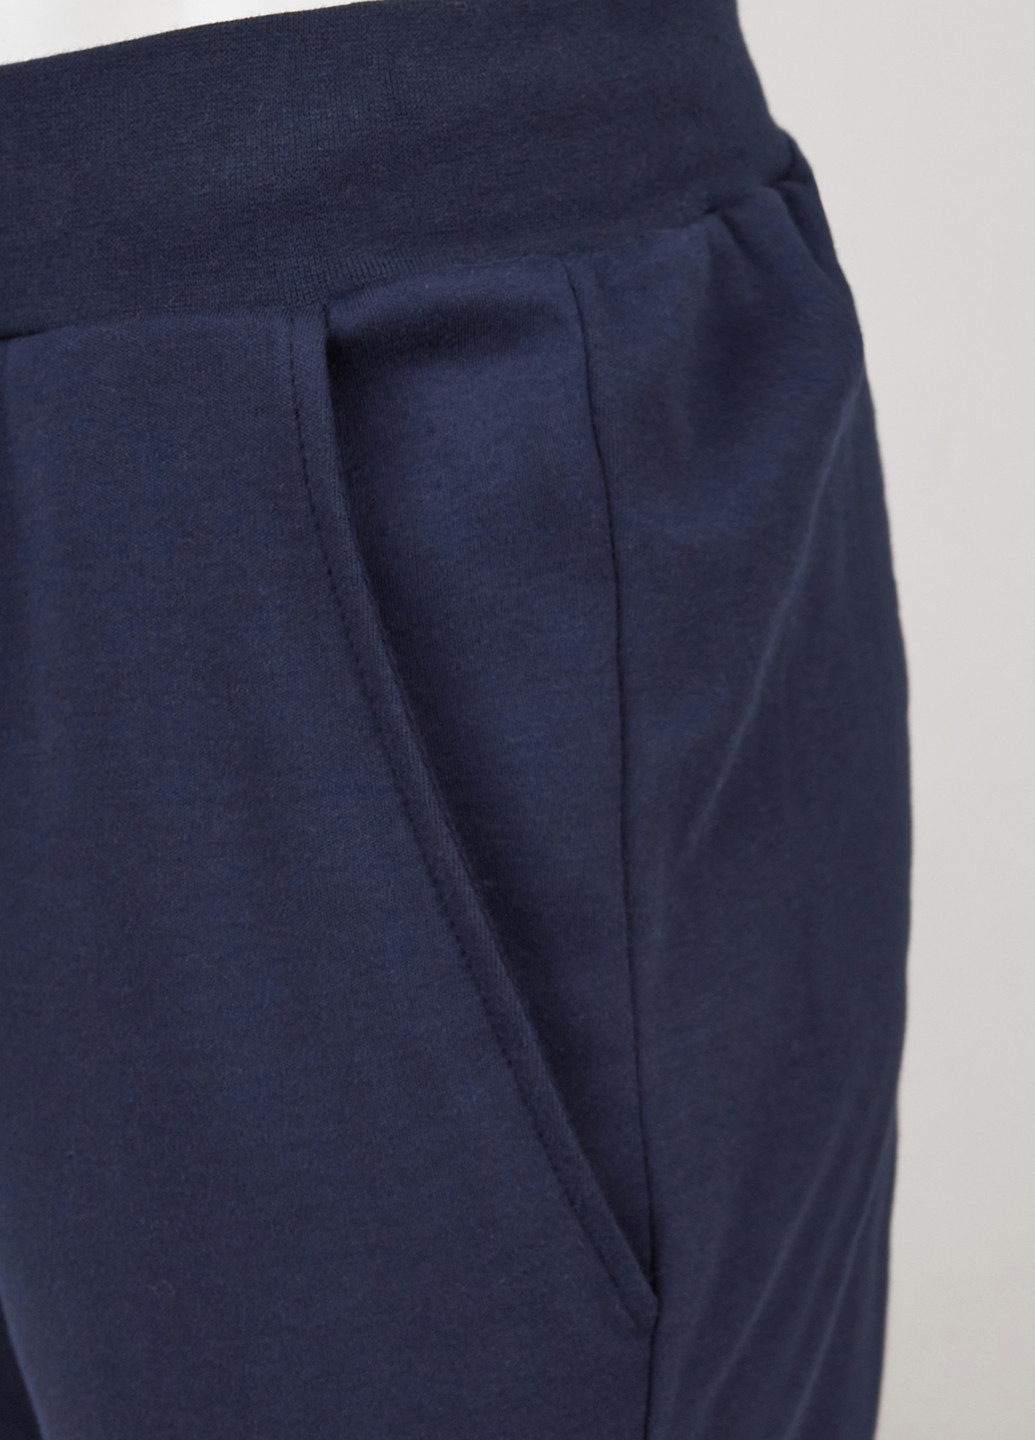 Комбинированная всесезон пижама (лонгслив, брюки) лонгслив + брюки Garnamama